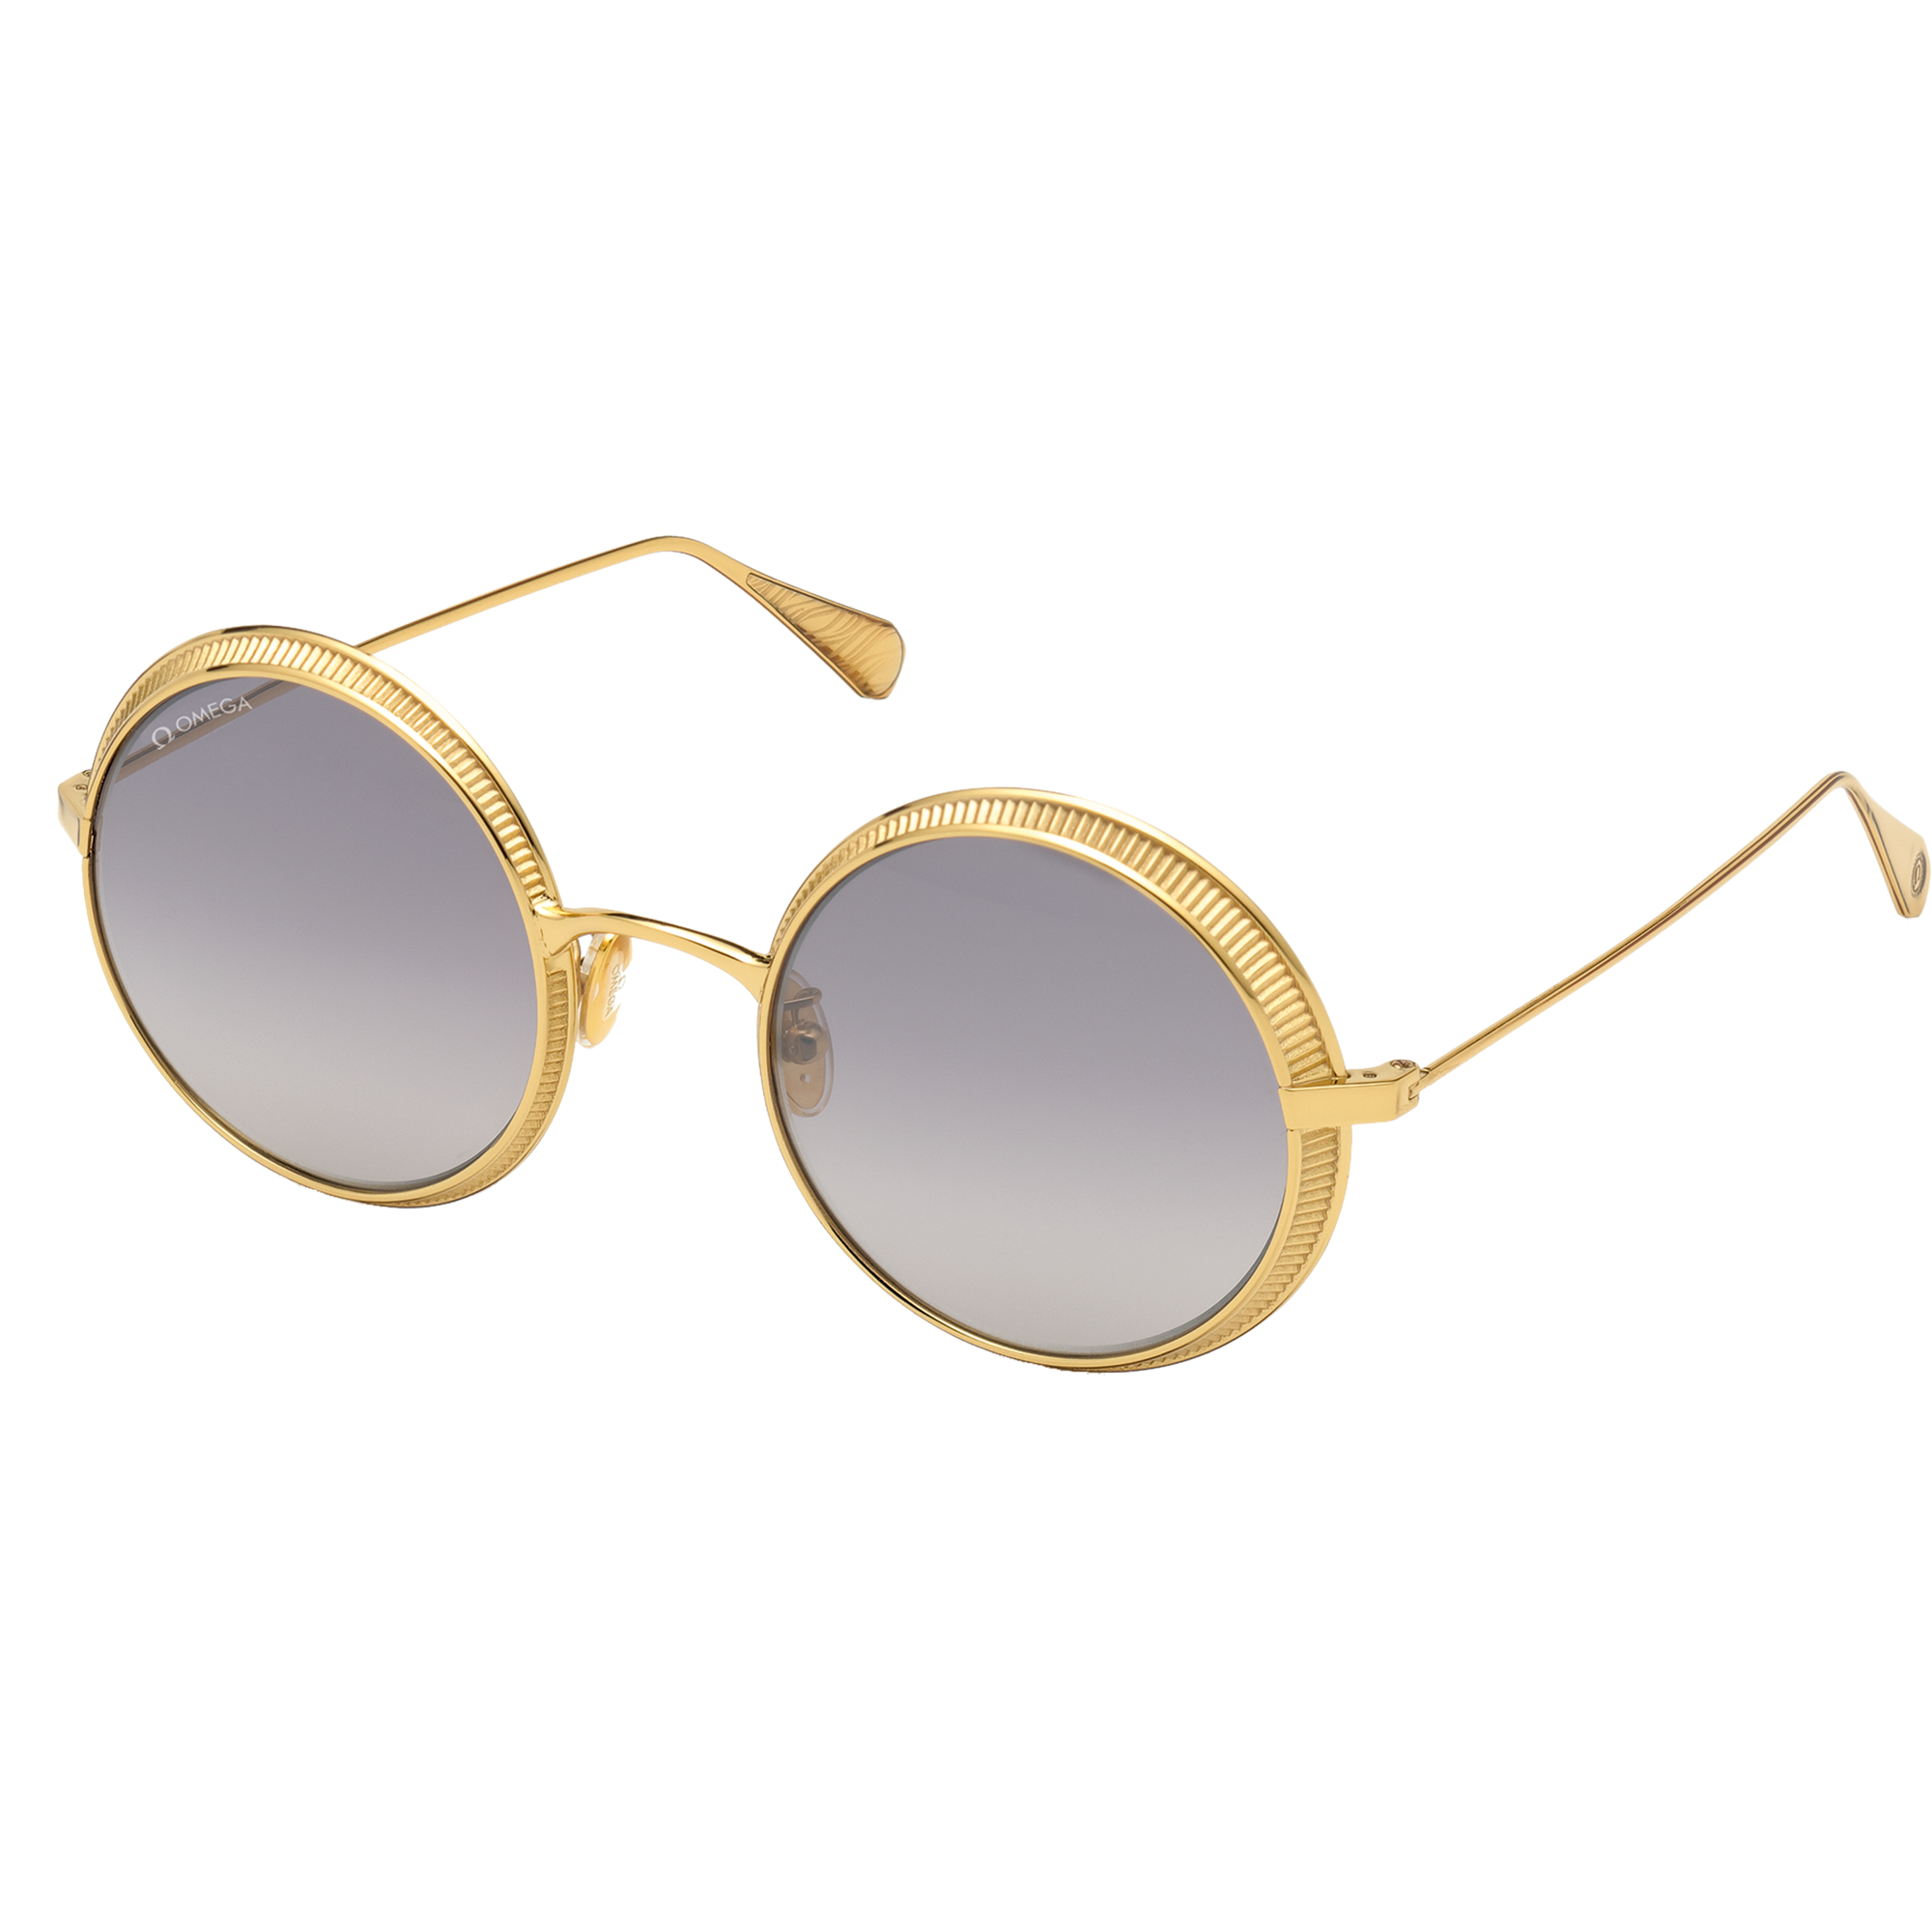 Солнцезащитные очки - Круглая форма, Женские очки - OM0016-H5330C